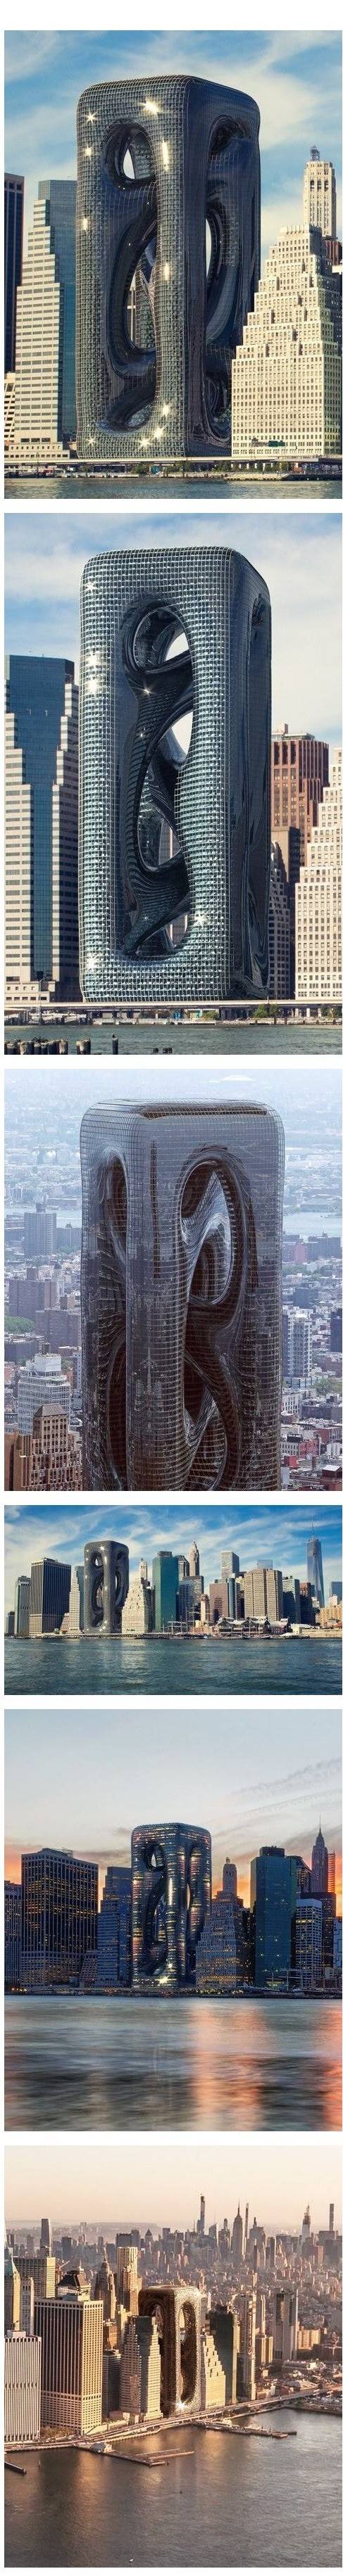 미국 뉴욕에 생긴다는 건물 .jpg